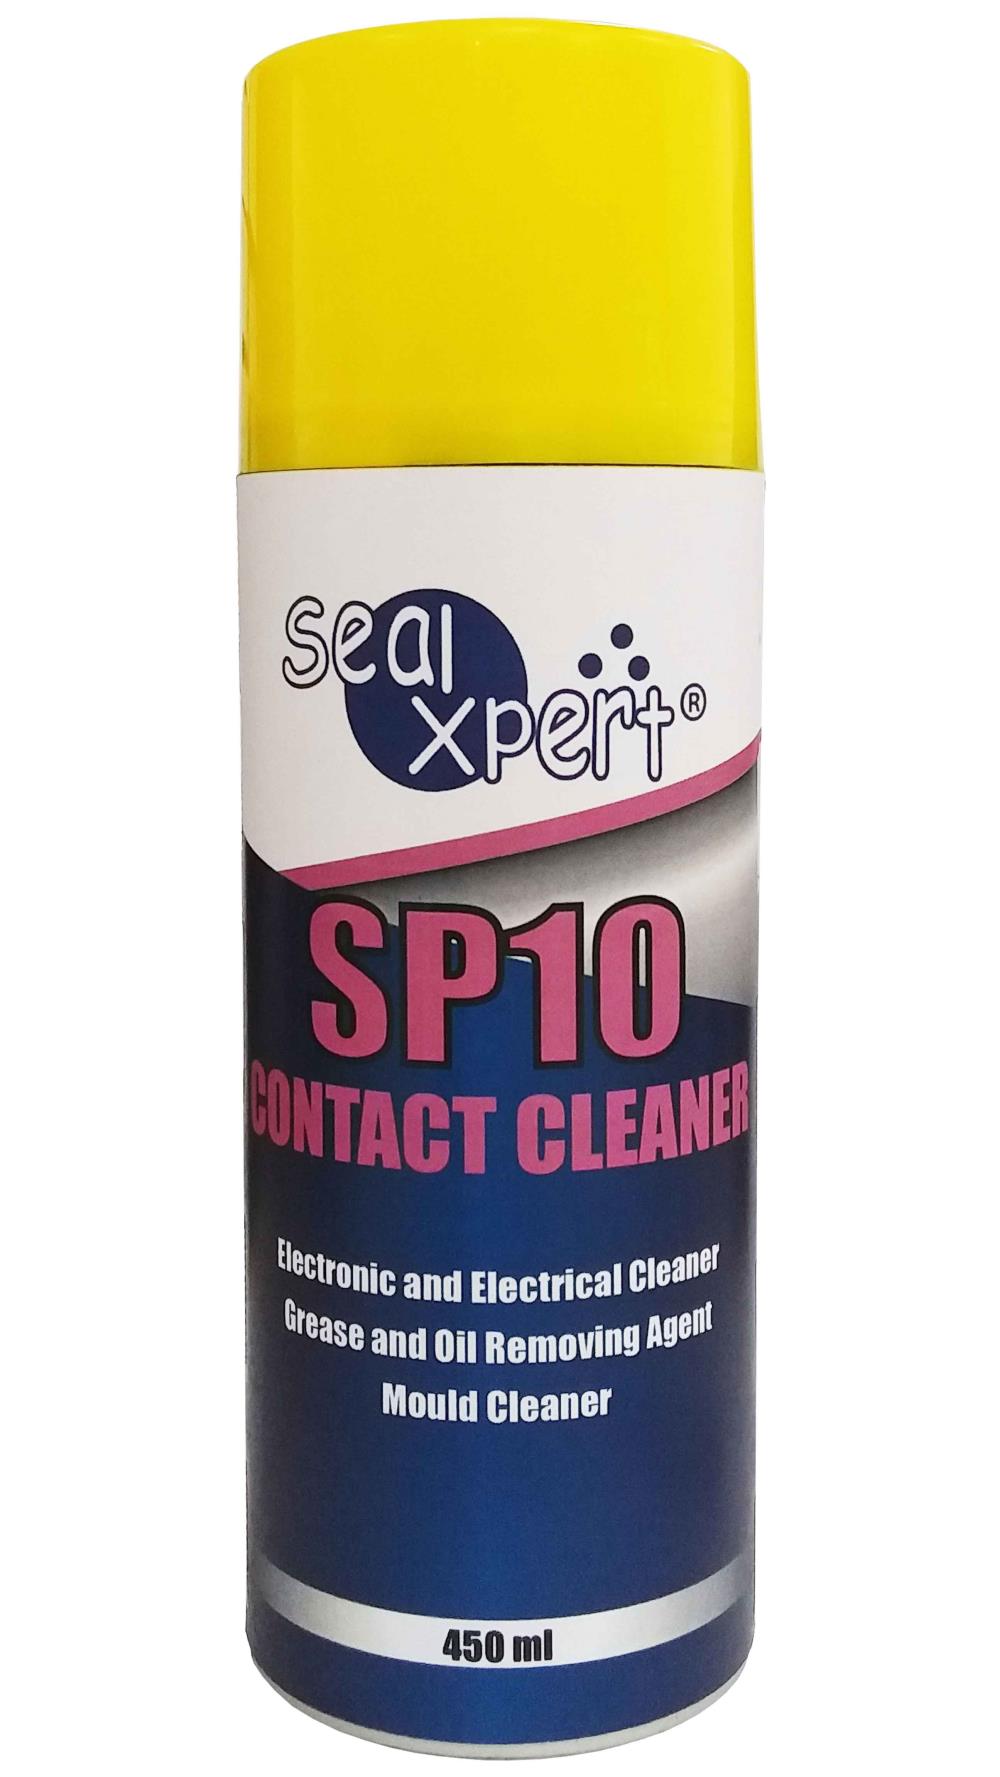  Seal X-Pert SP10 CONTACT CLEANER  สเปรย์ทำความสะอาดหน้าสัมผัสอุปกรณ์อิเล็กทรอนิกส์ และอุปกรณ์ไฟฟ้า